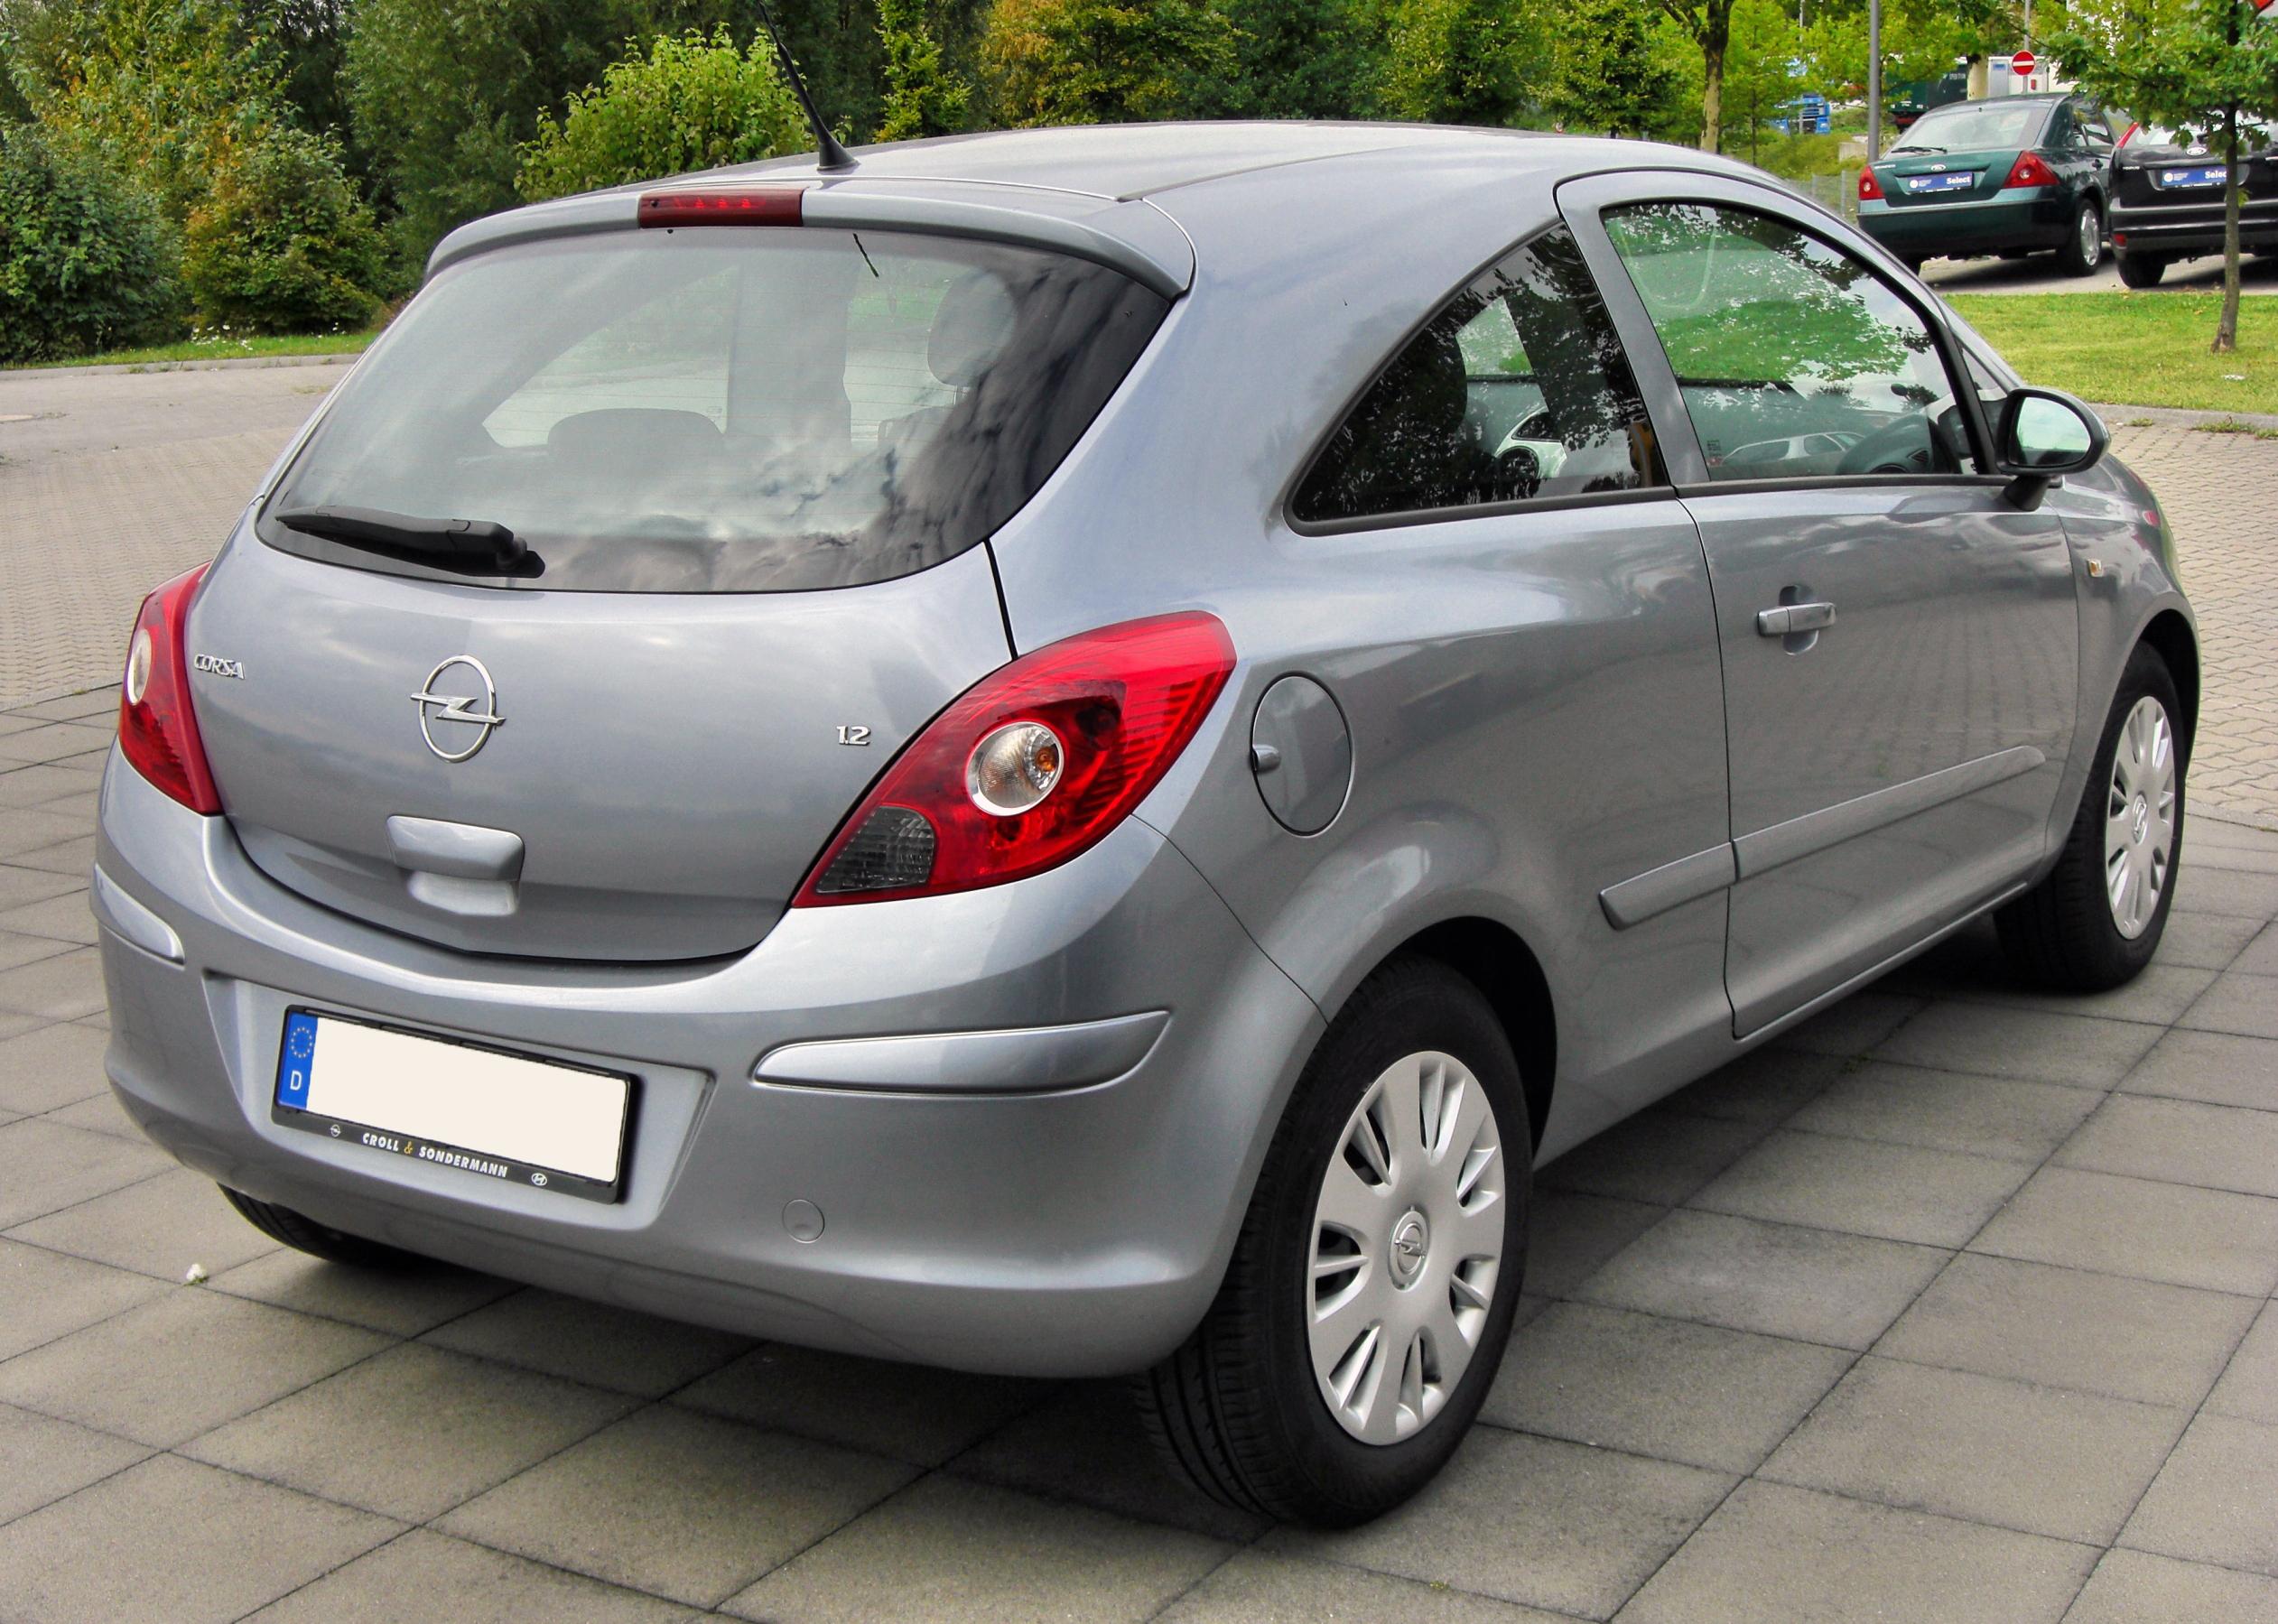 File:Opel Corsa D 1.4 rear 20100912.jpg - Wikipedia